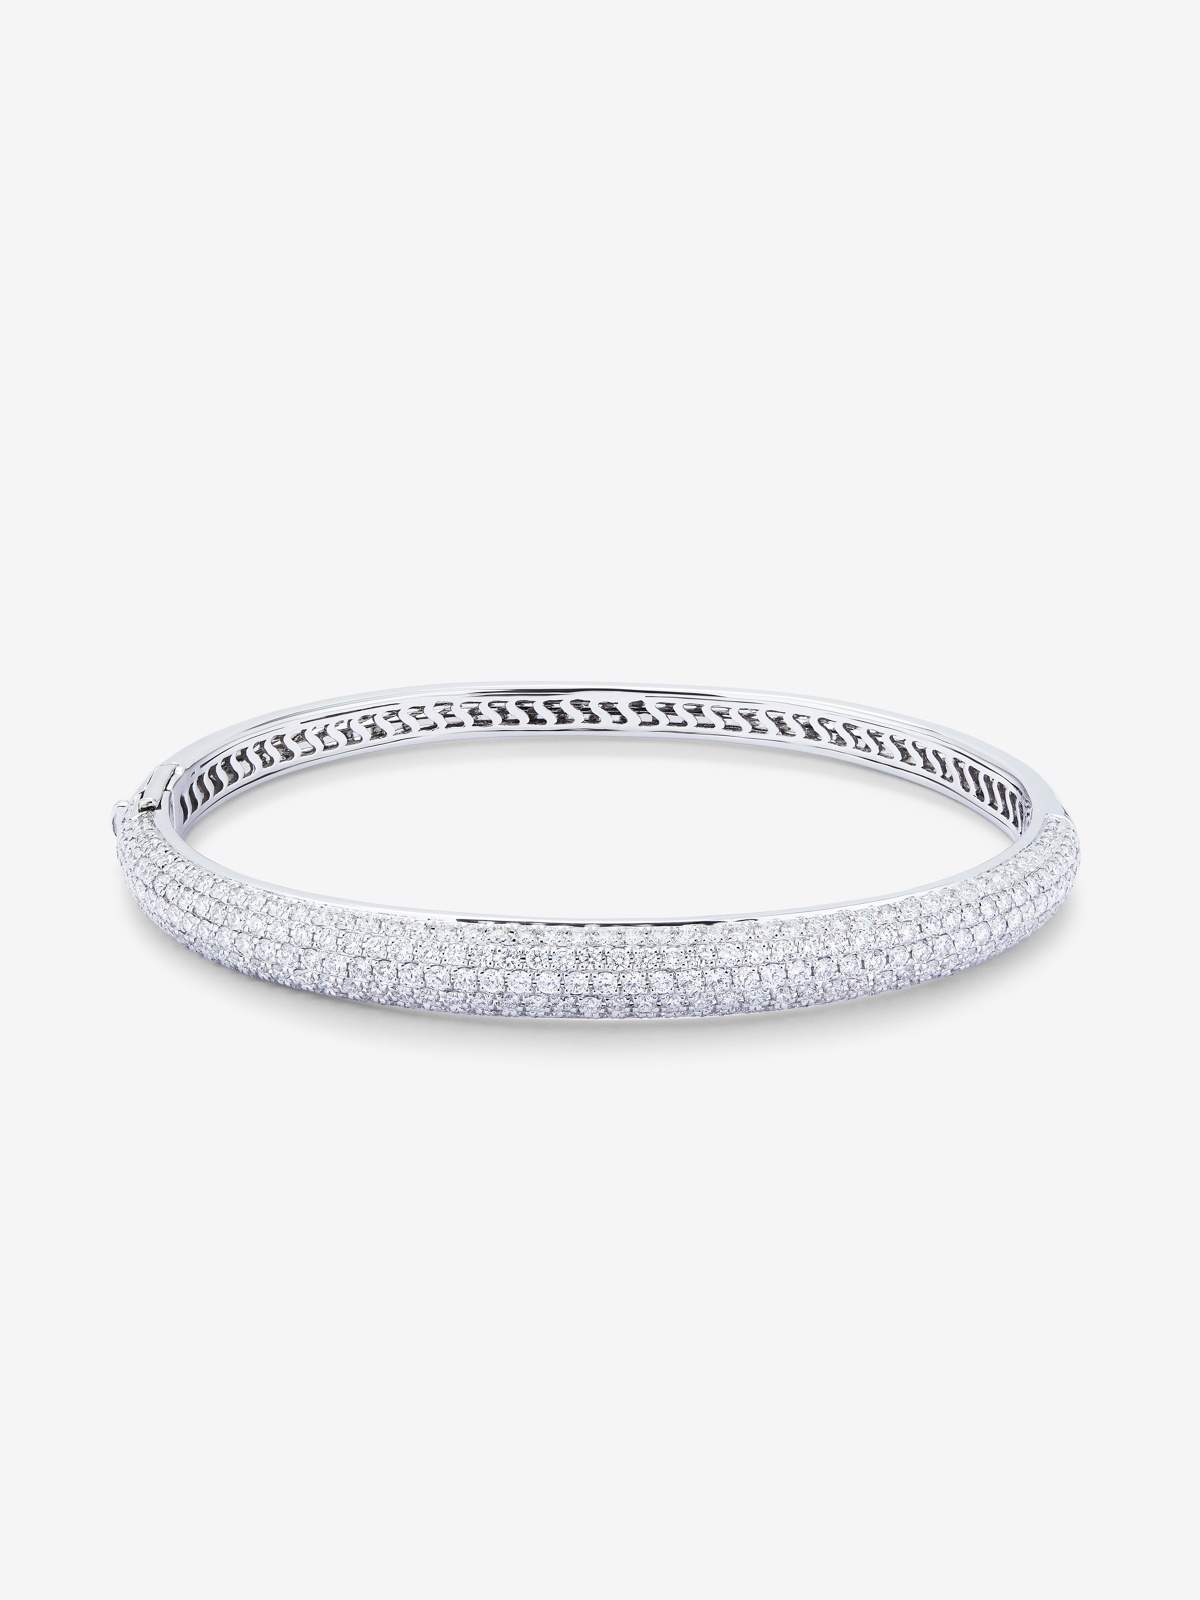 Rigid half -cane bracelet 18k white with diamond paw